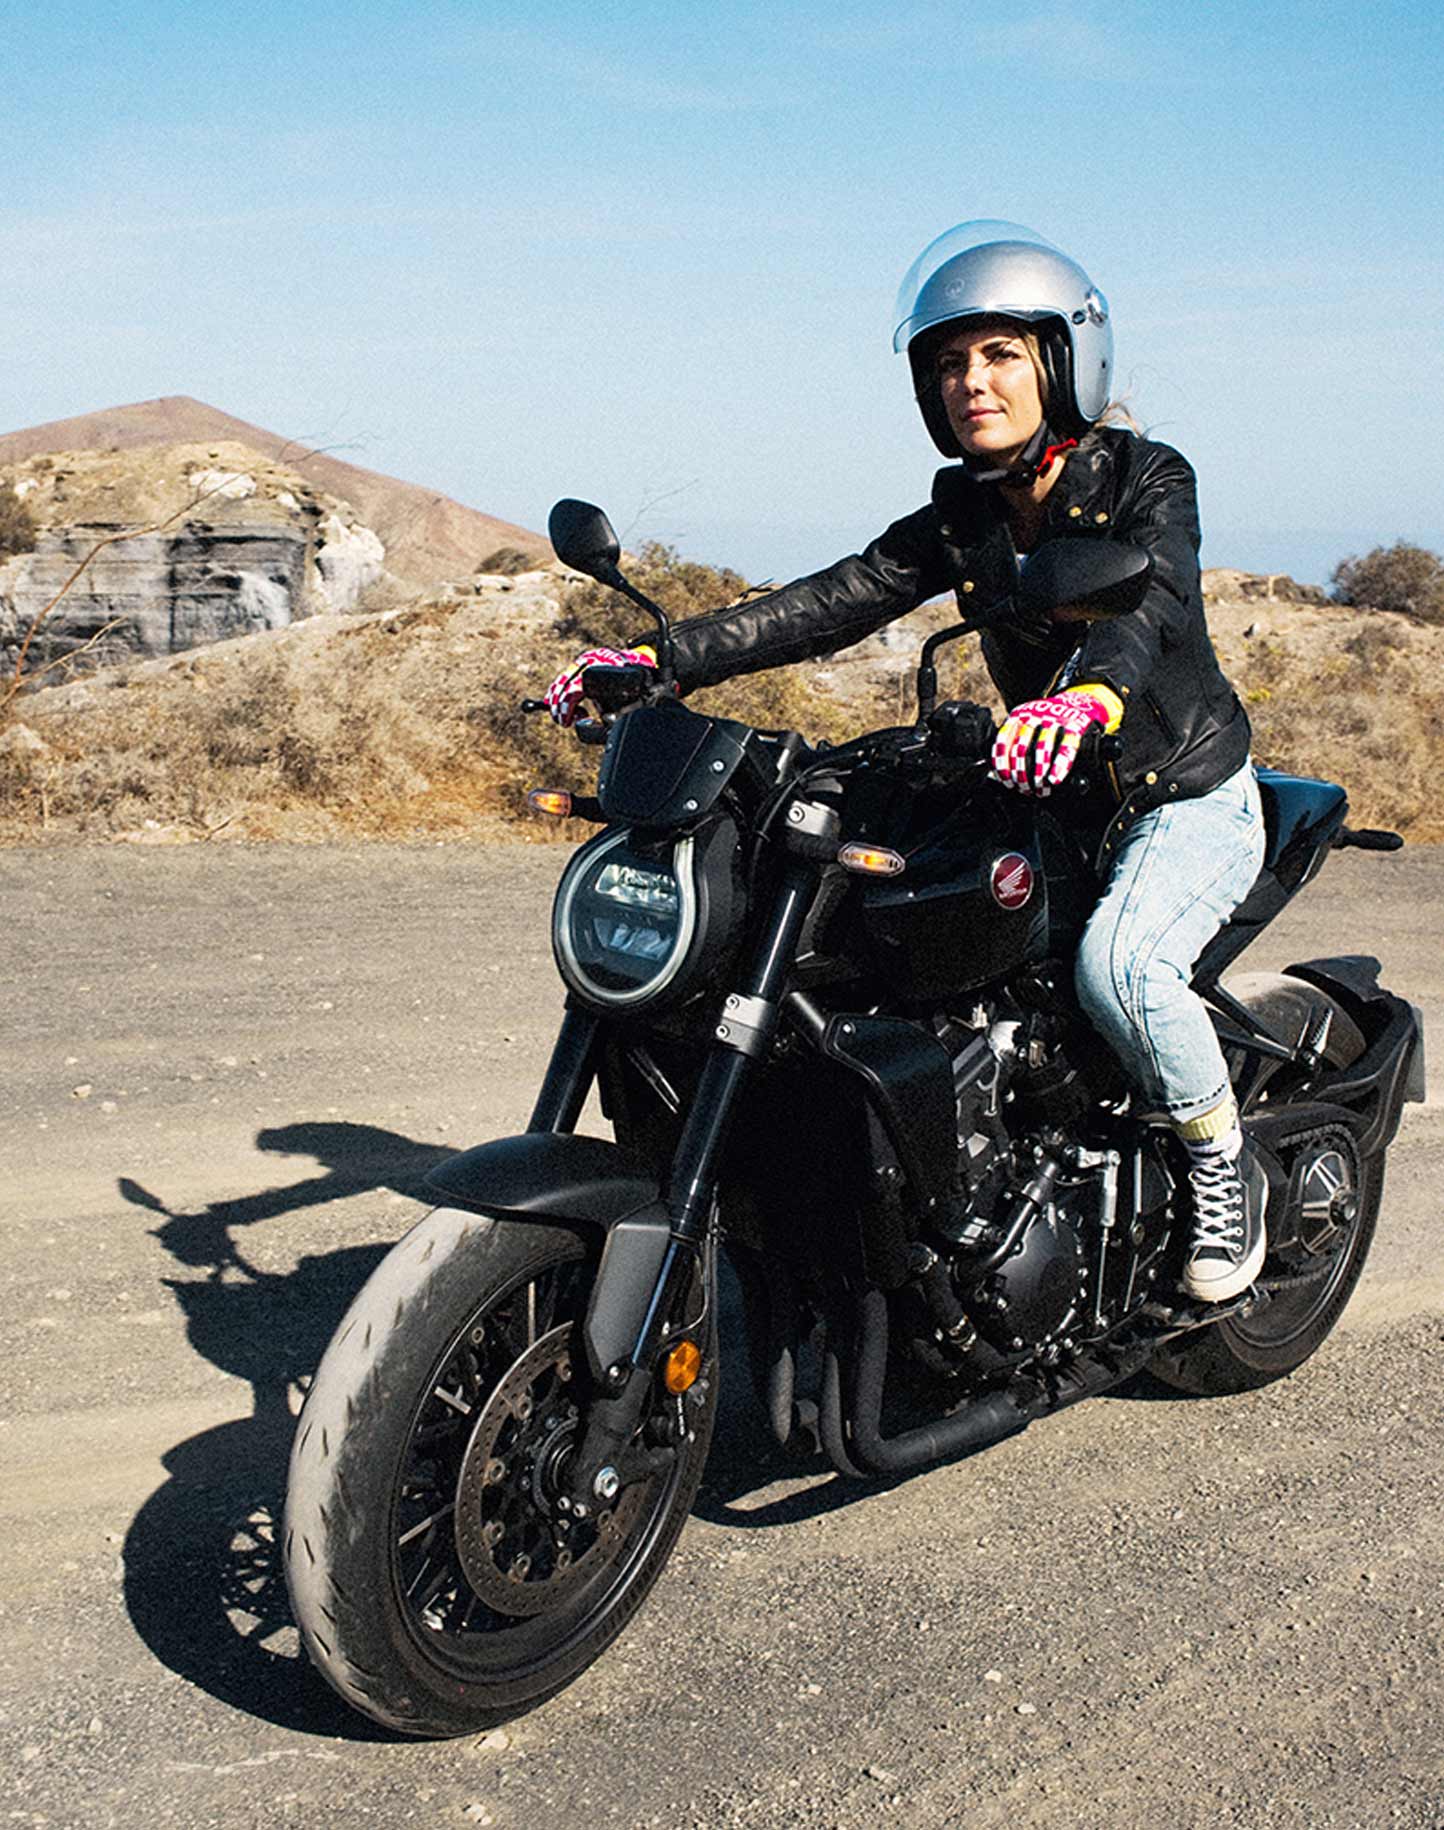 Choisir son blouson moto femme pour l'été - Les Bikeuses